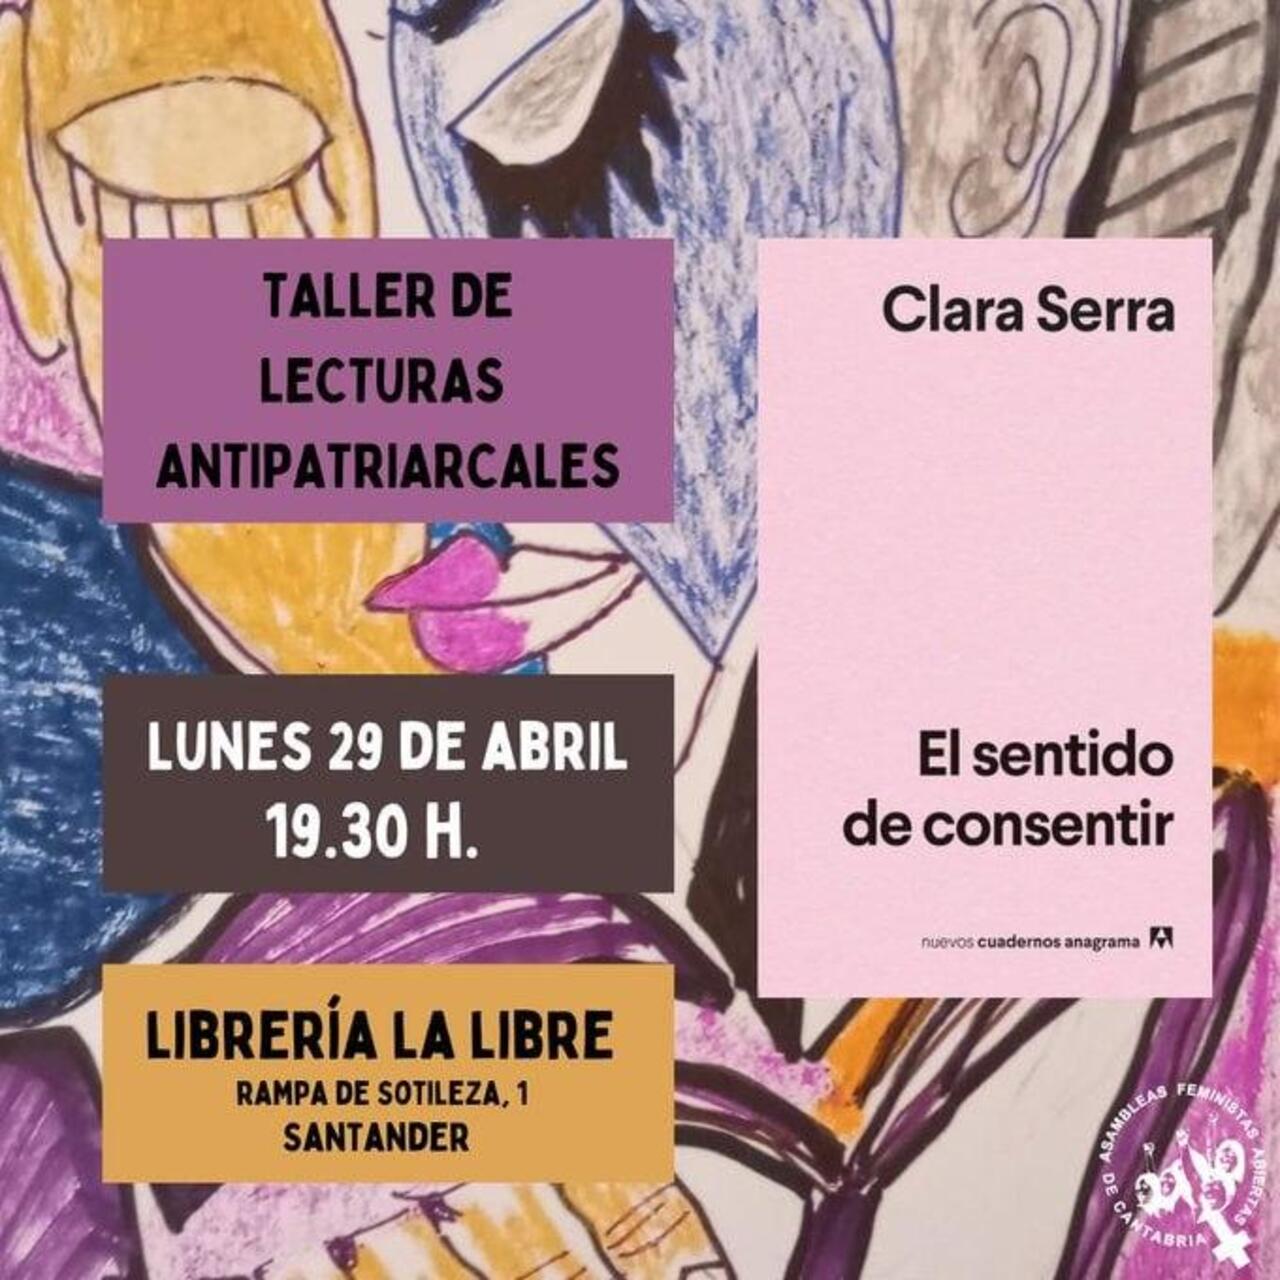 Taller de lecturas antipatriarcales en torno al libro "El sentido de consentir" de Clara Serra